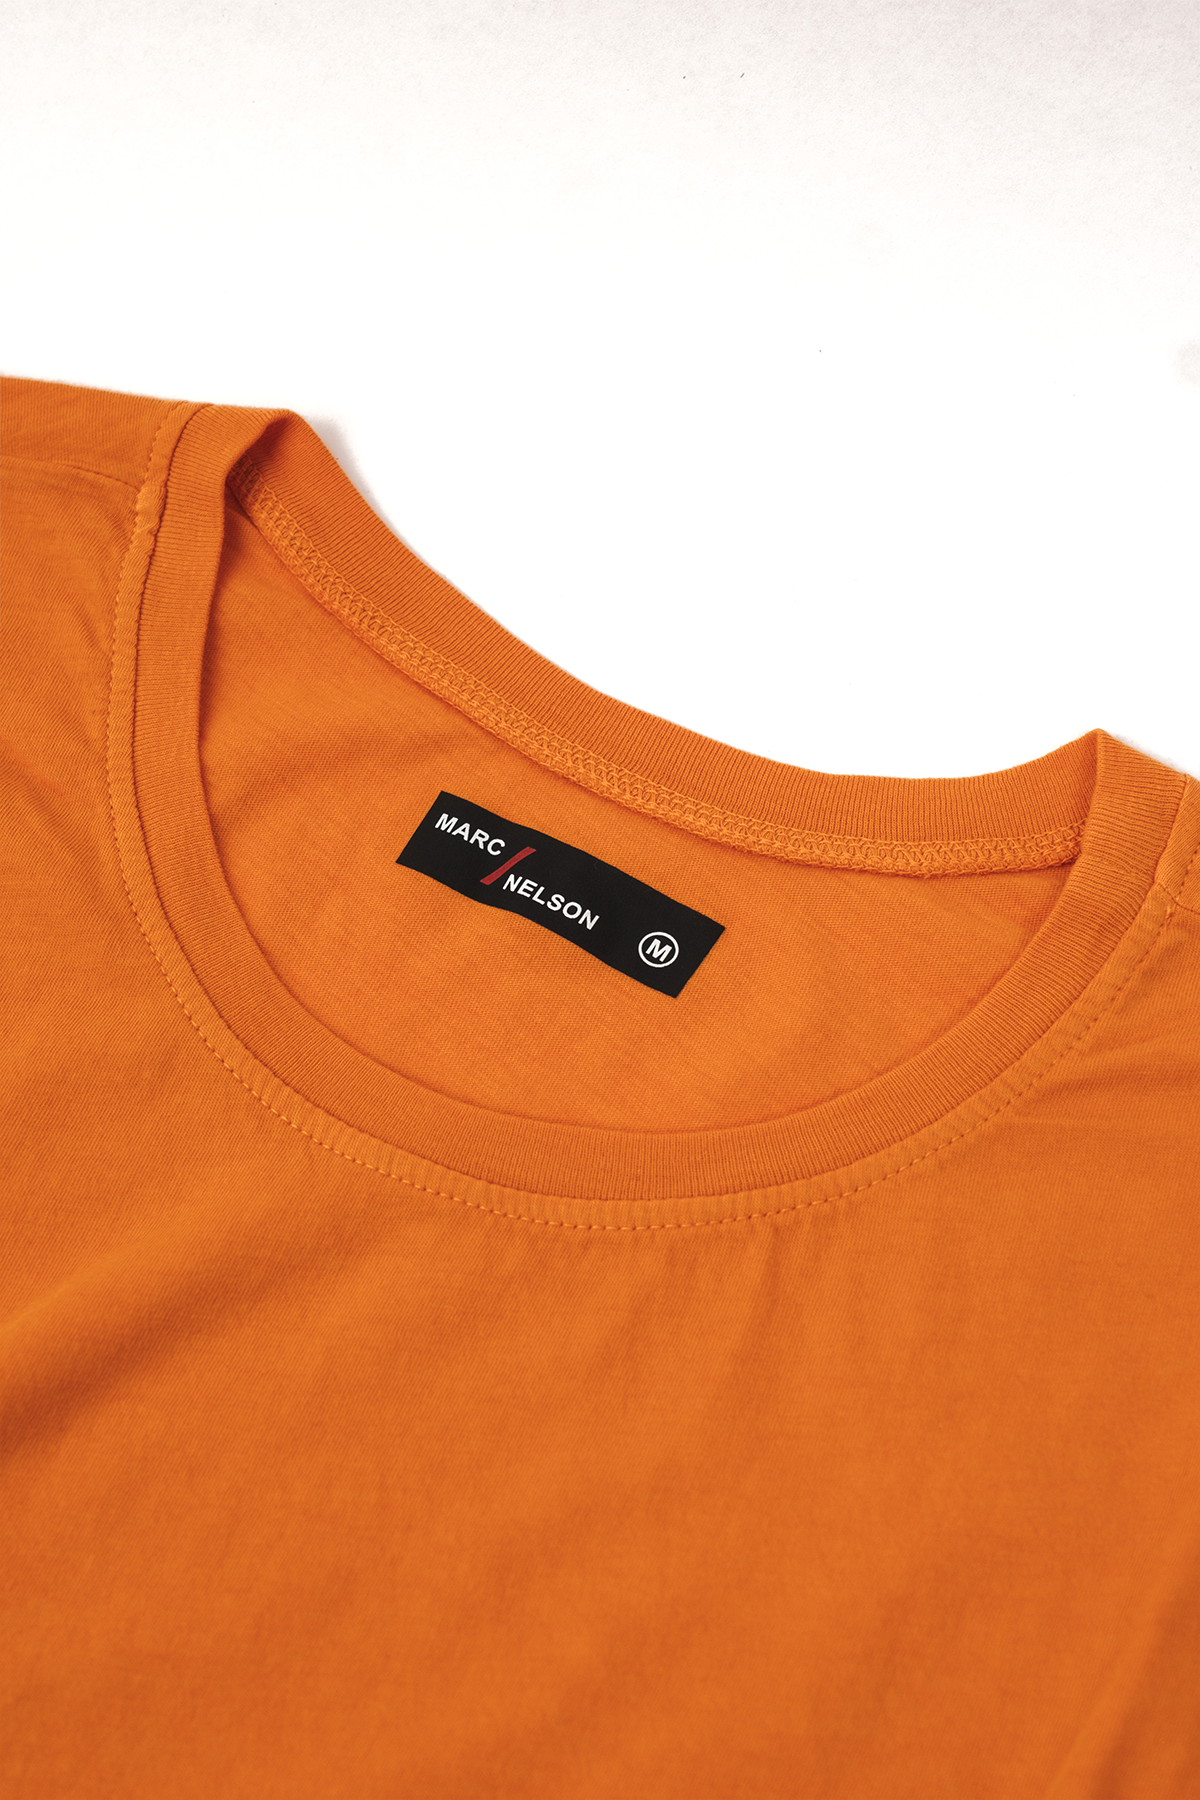 orange long sleeve crew neck shirt close up